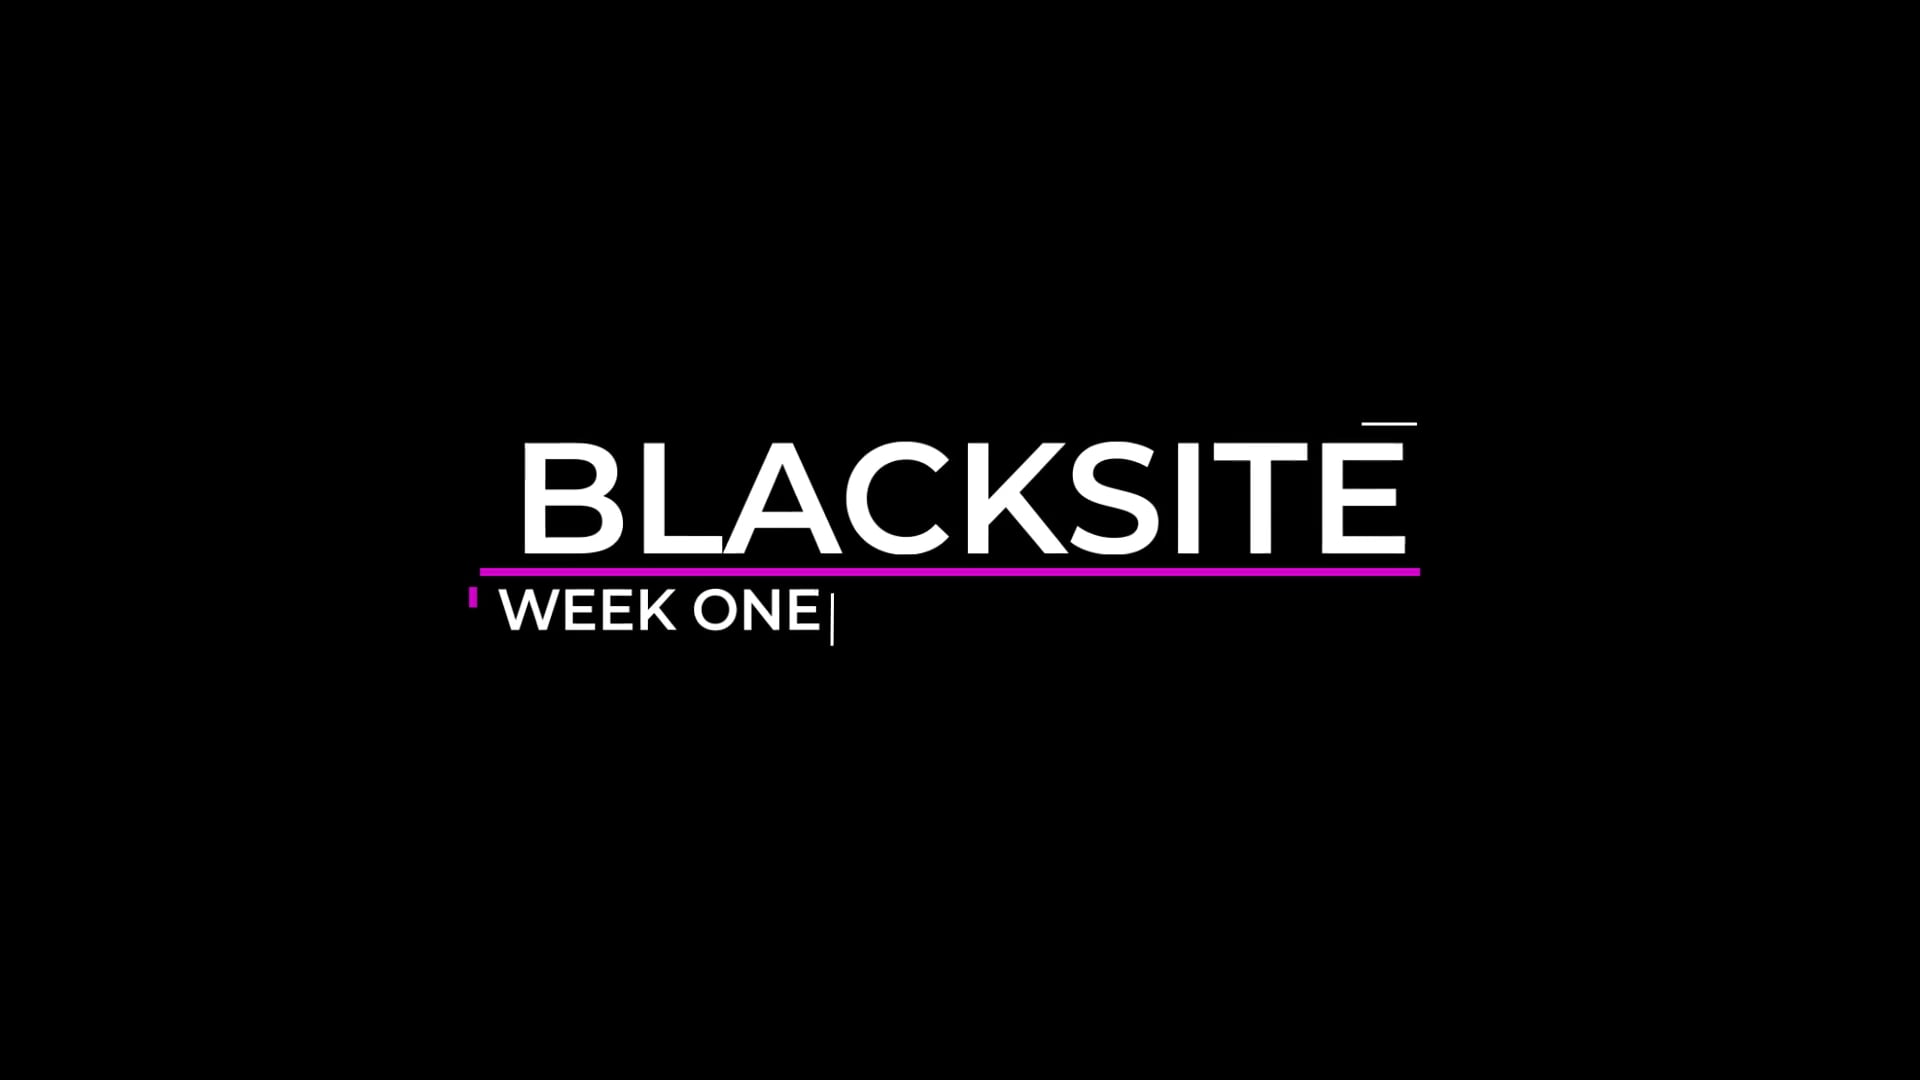 Black site - BTS week one